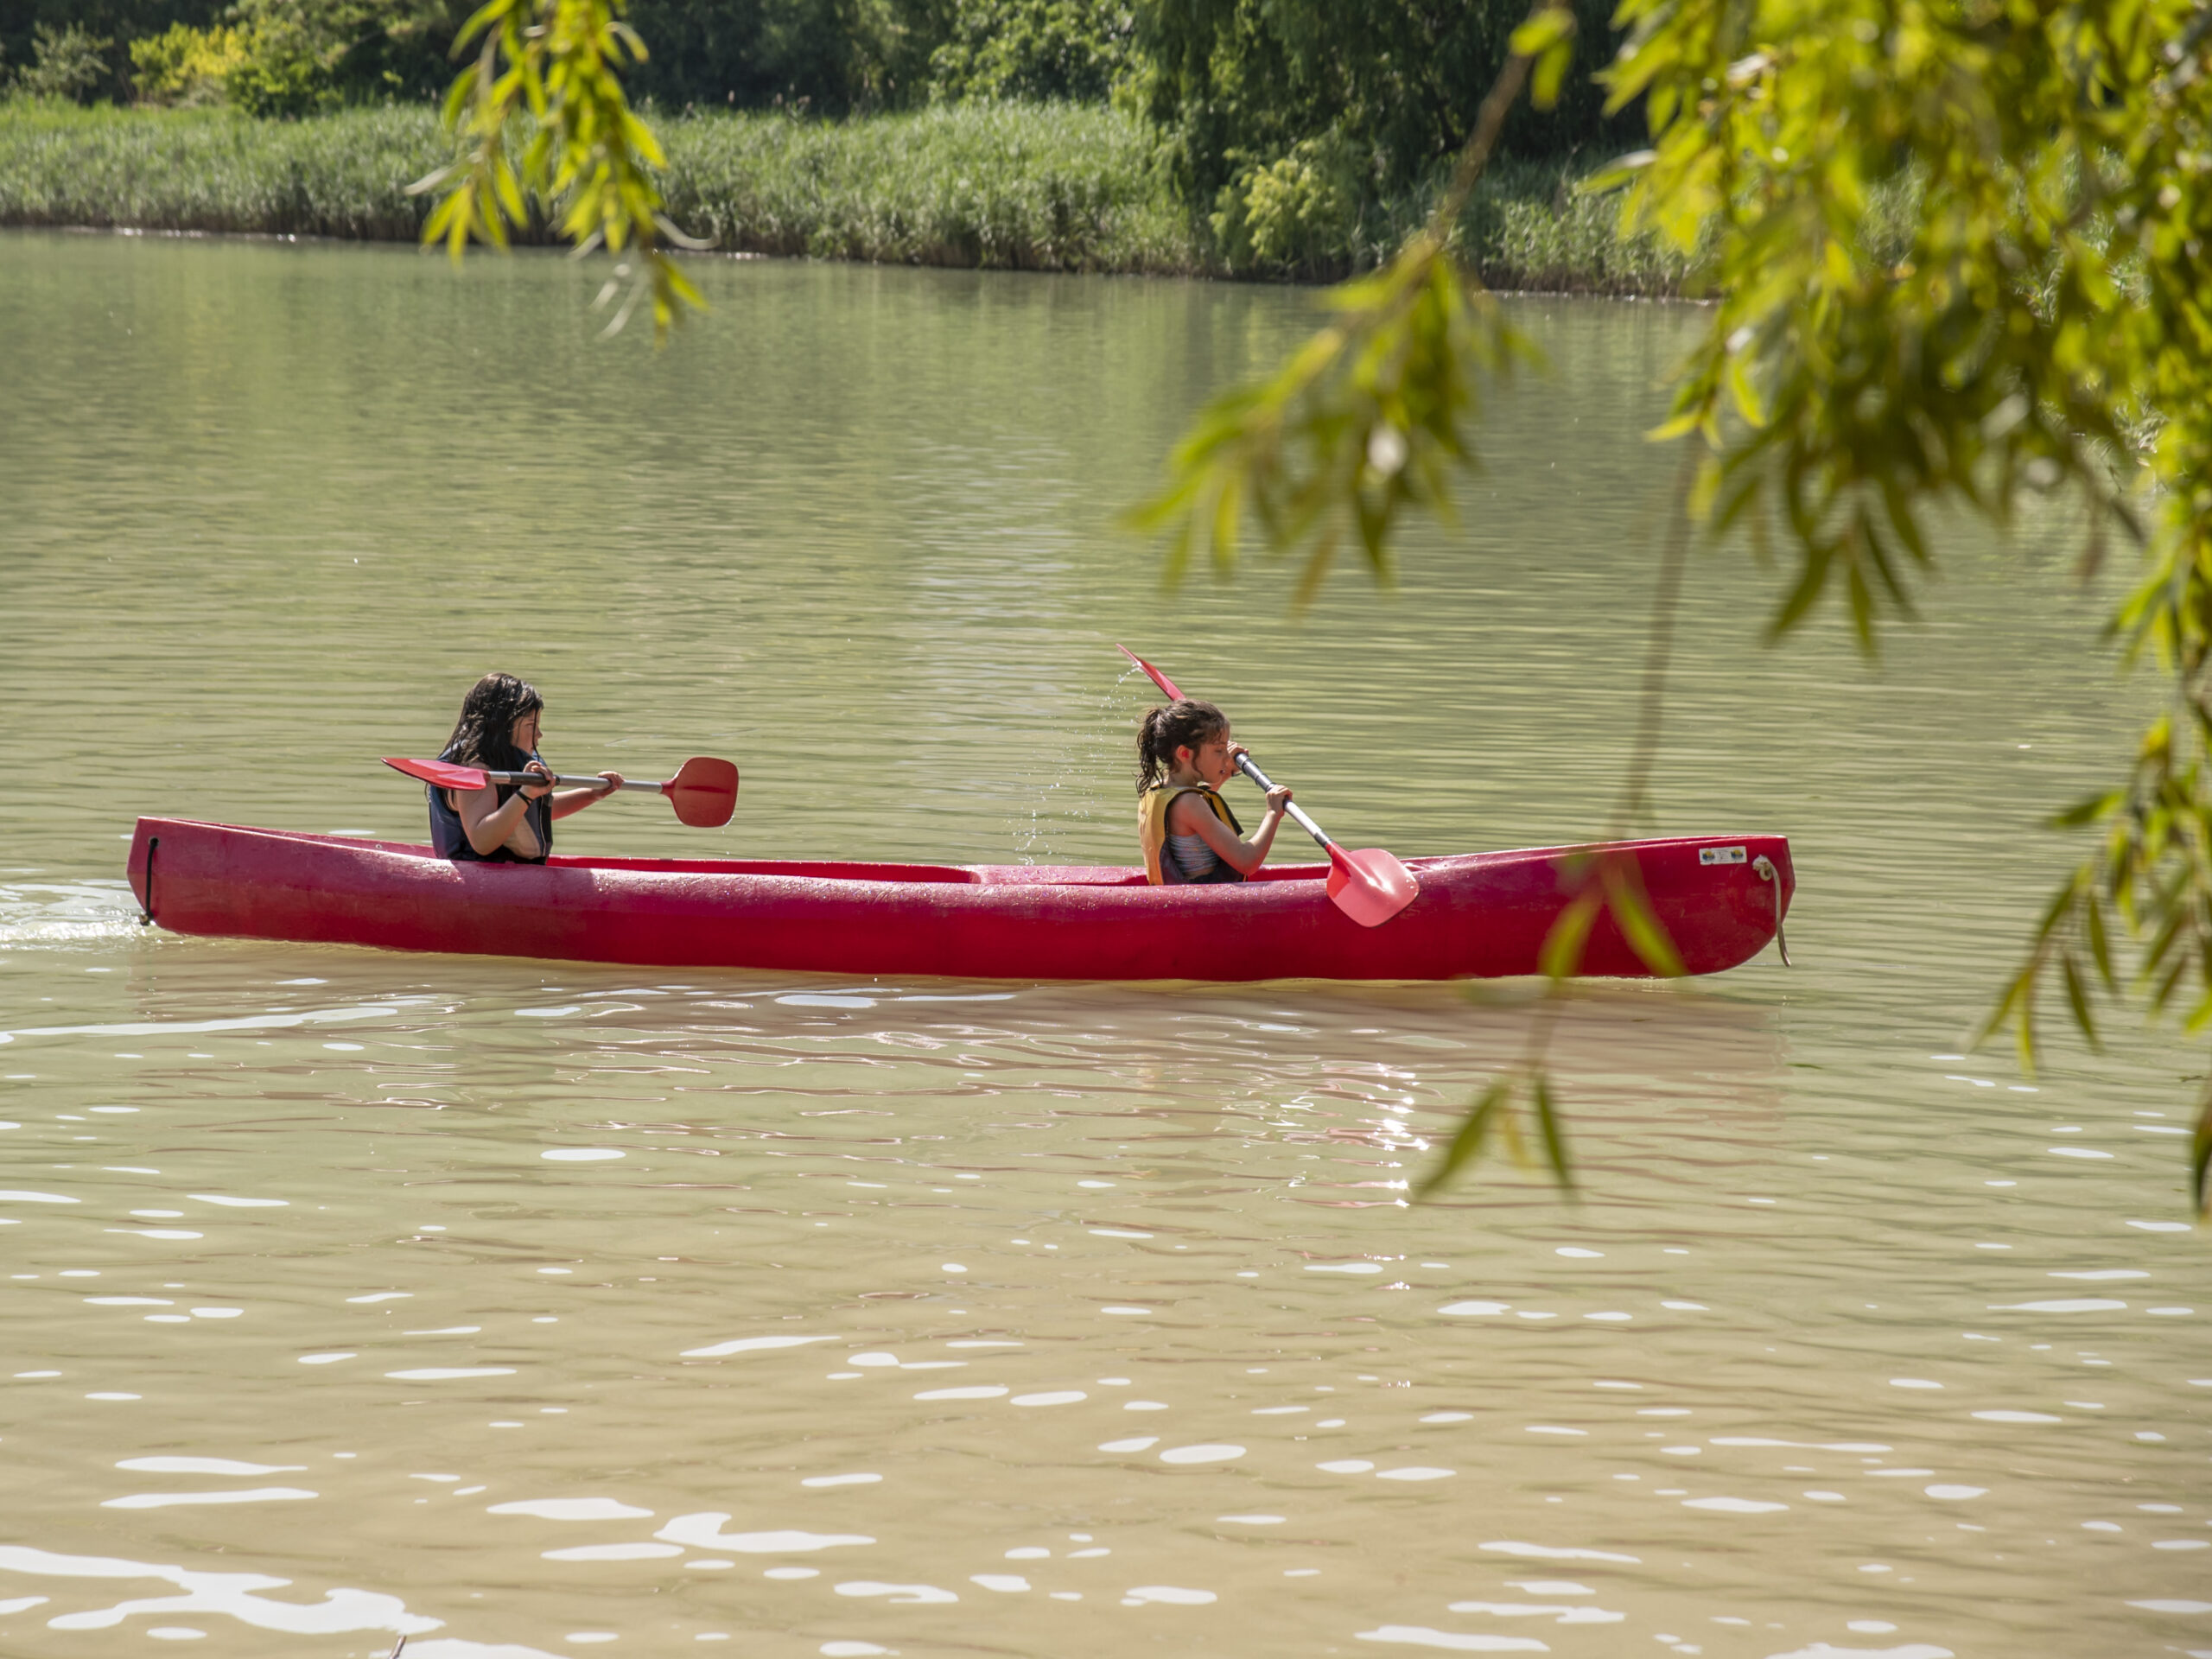 Personas remando en canoa roja en lago.